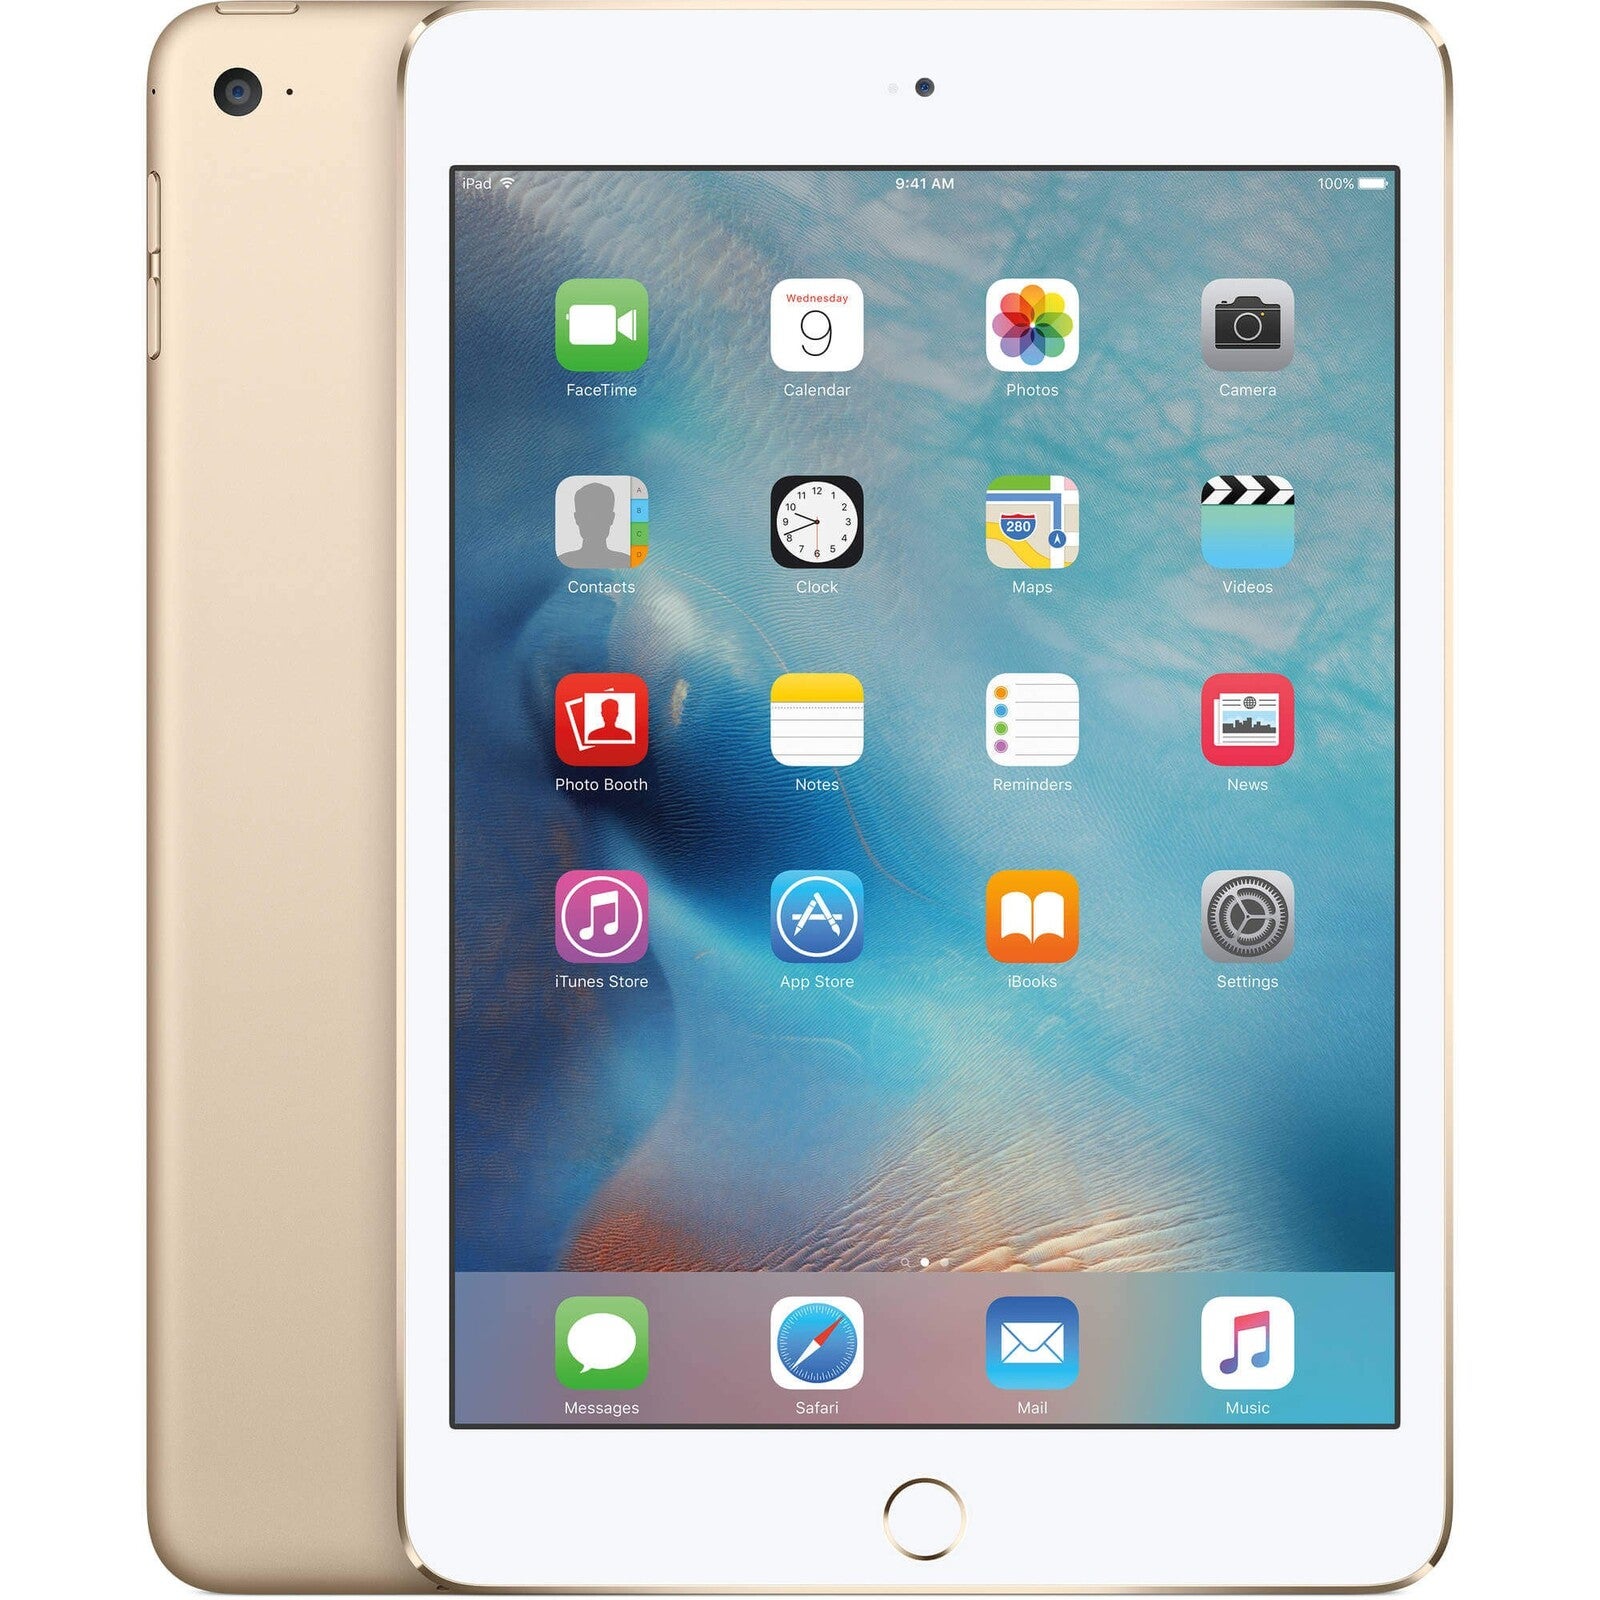 Apple iPad Mini 4 128GB Wifi - Gold - (As New Refurbished) - Grade A